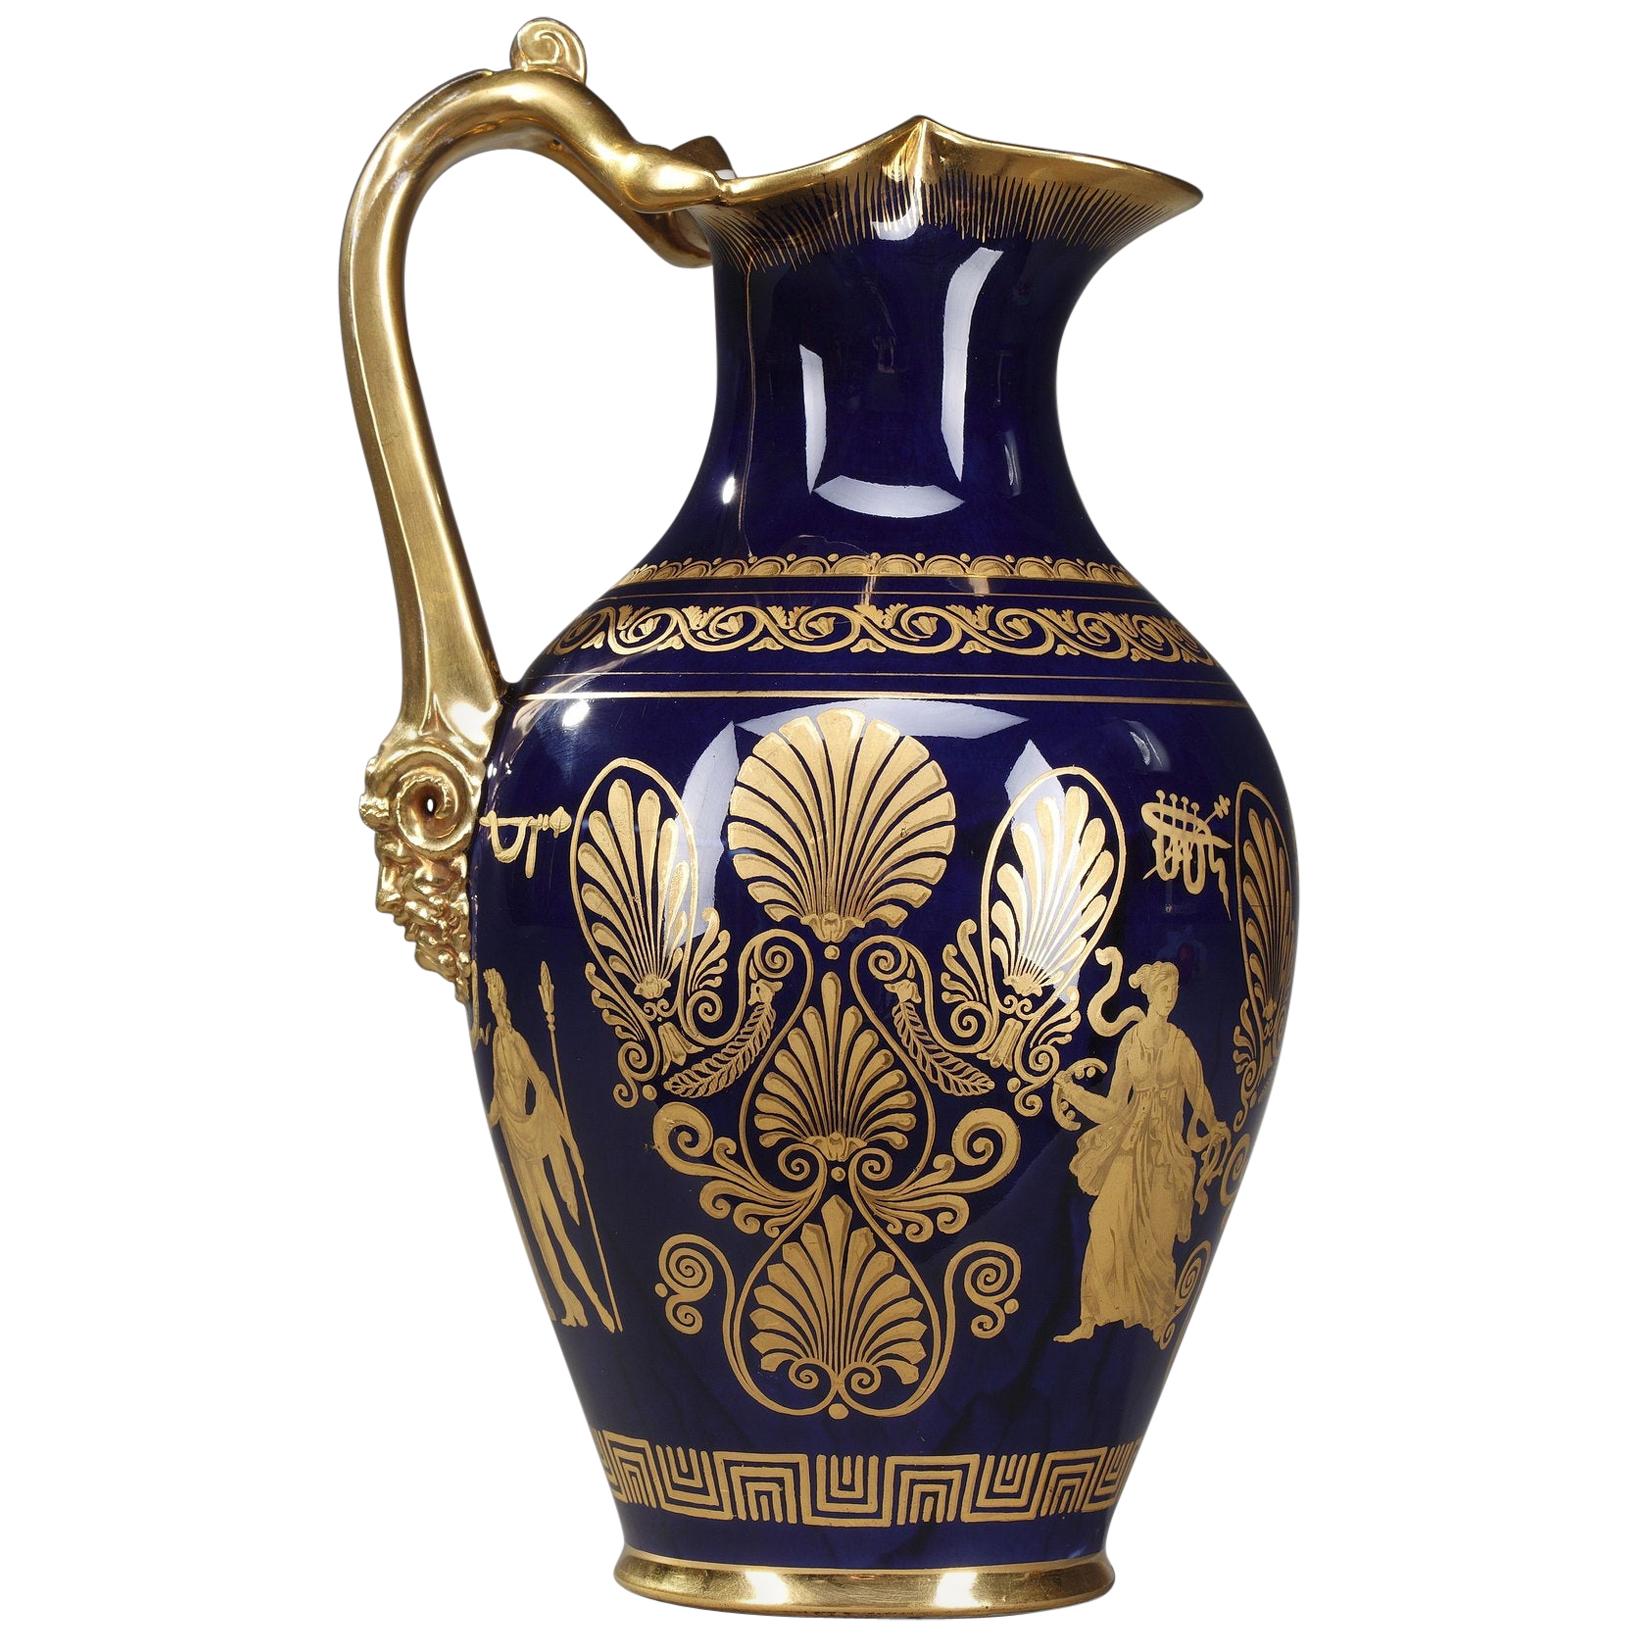 Empire Porcelain Ewer with Antique Decoration